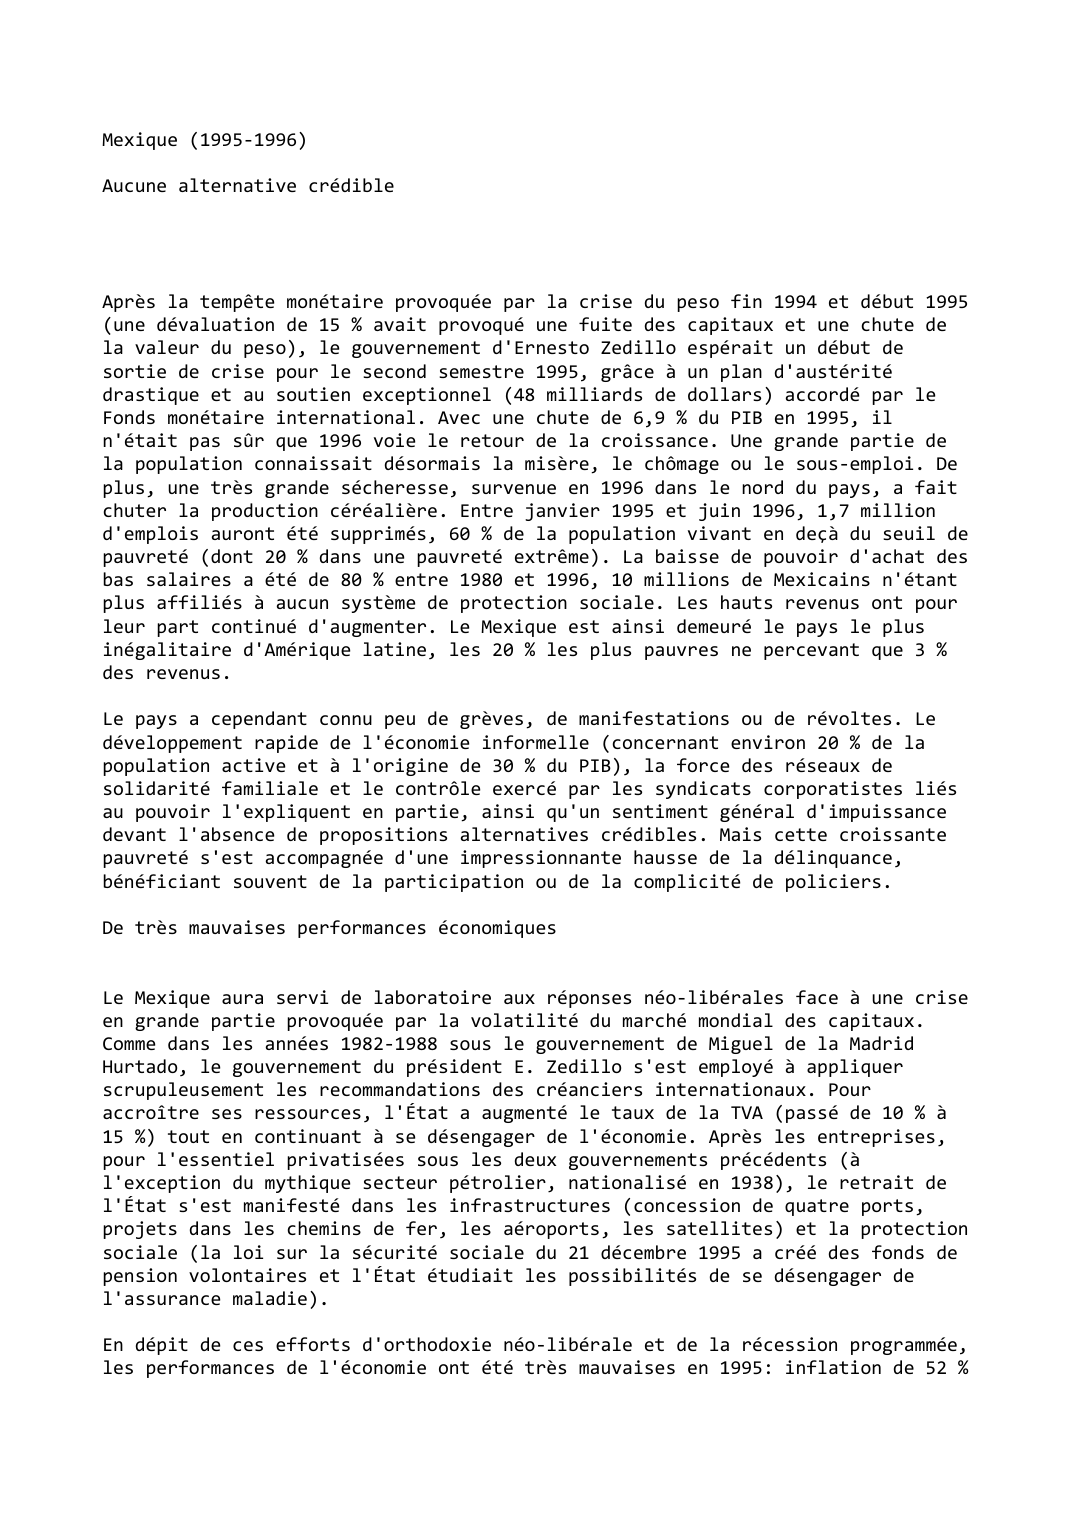 Prévisualisation du document Mexique (1995-1996)

Aucune alternative crédible